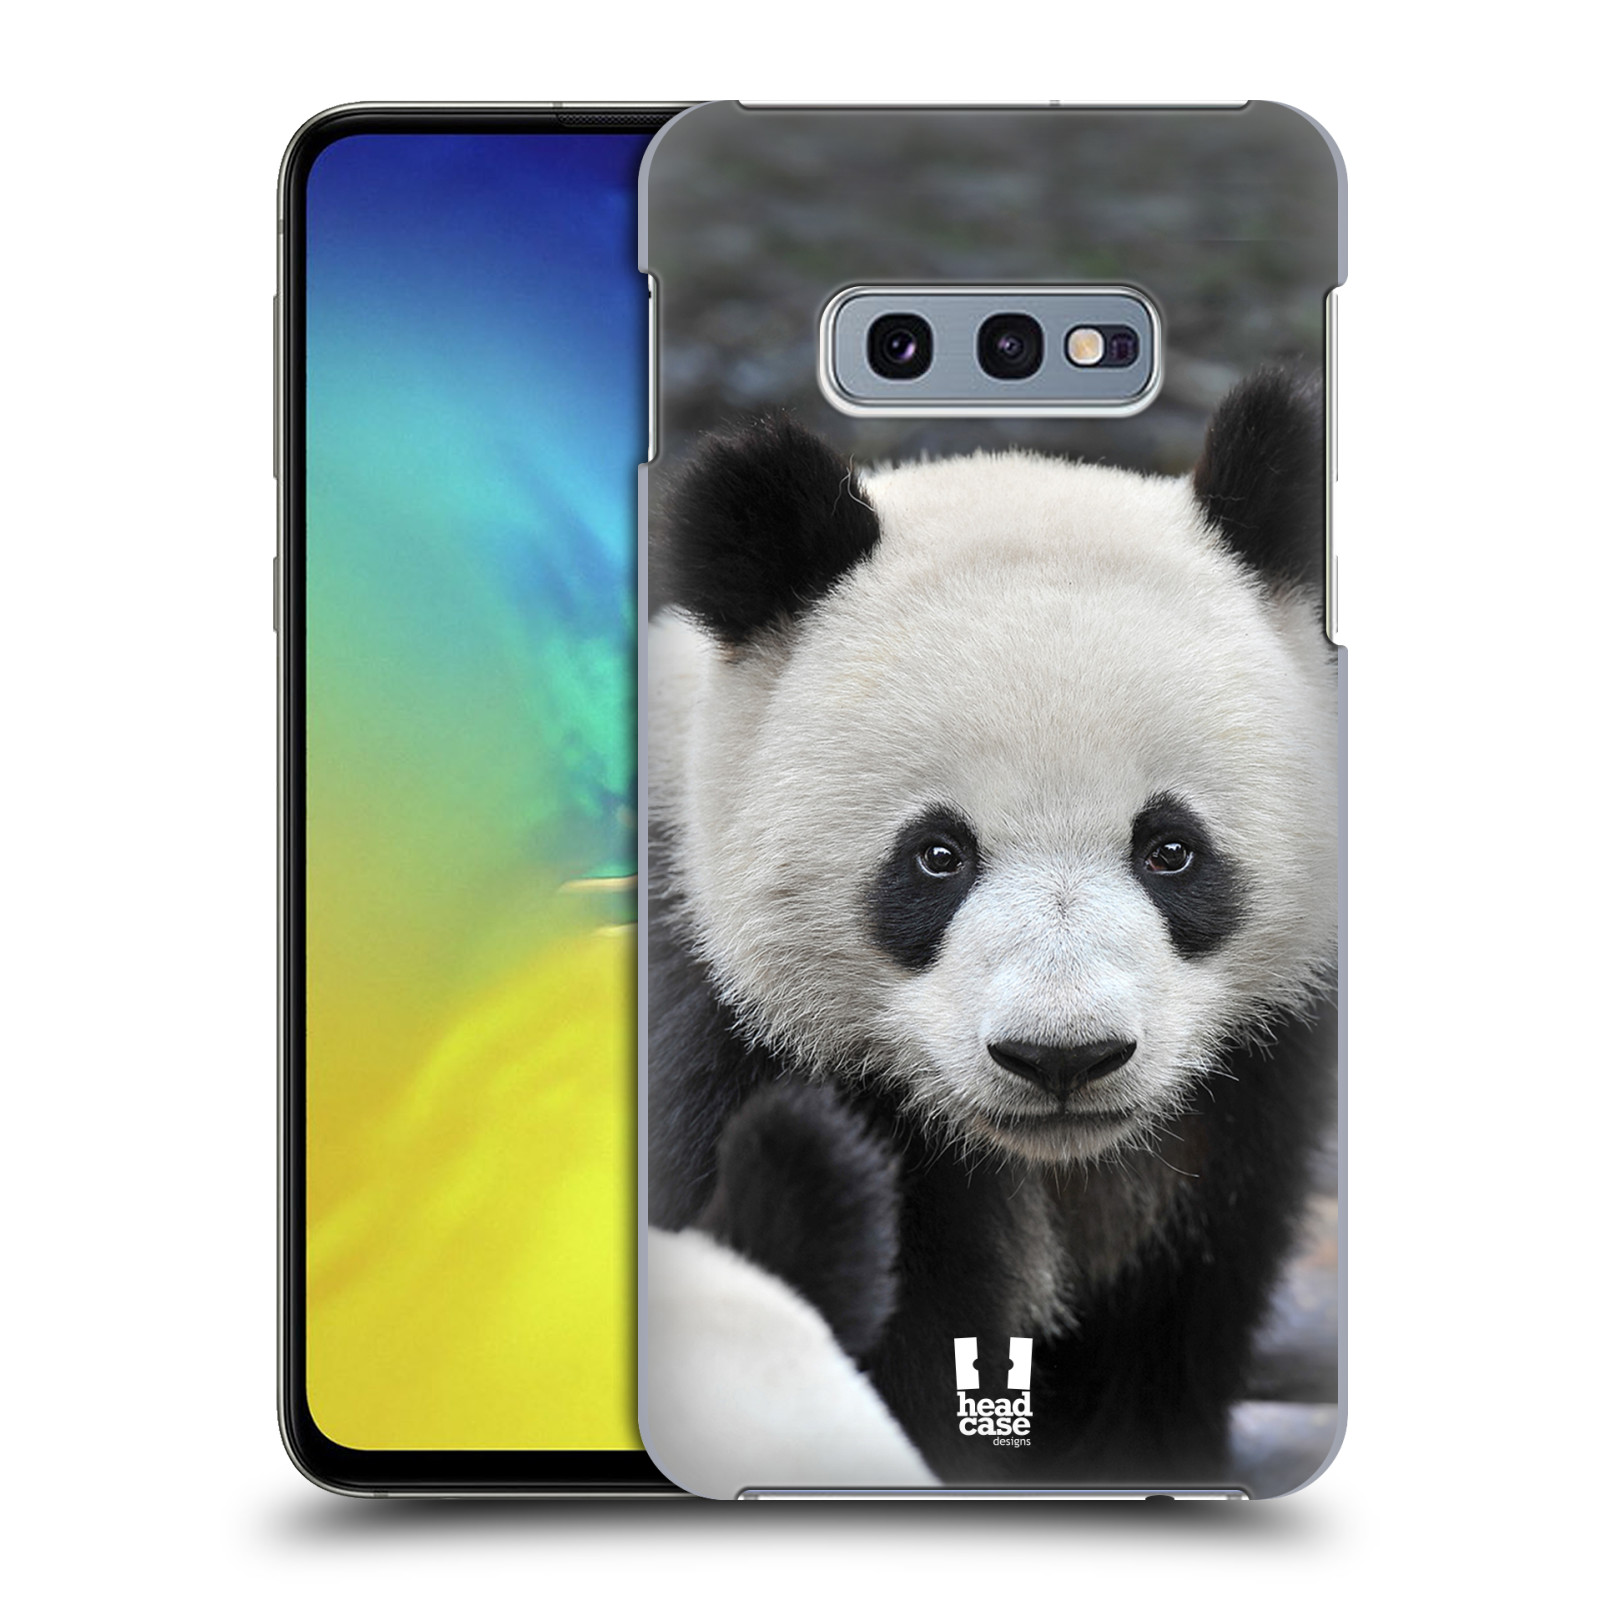 Zadní obal pro mobil Samsung Galaxy S10e - HEAD CASE - Svět zvířat medvěd panda